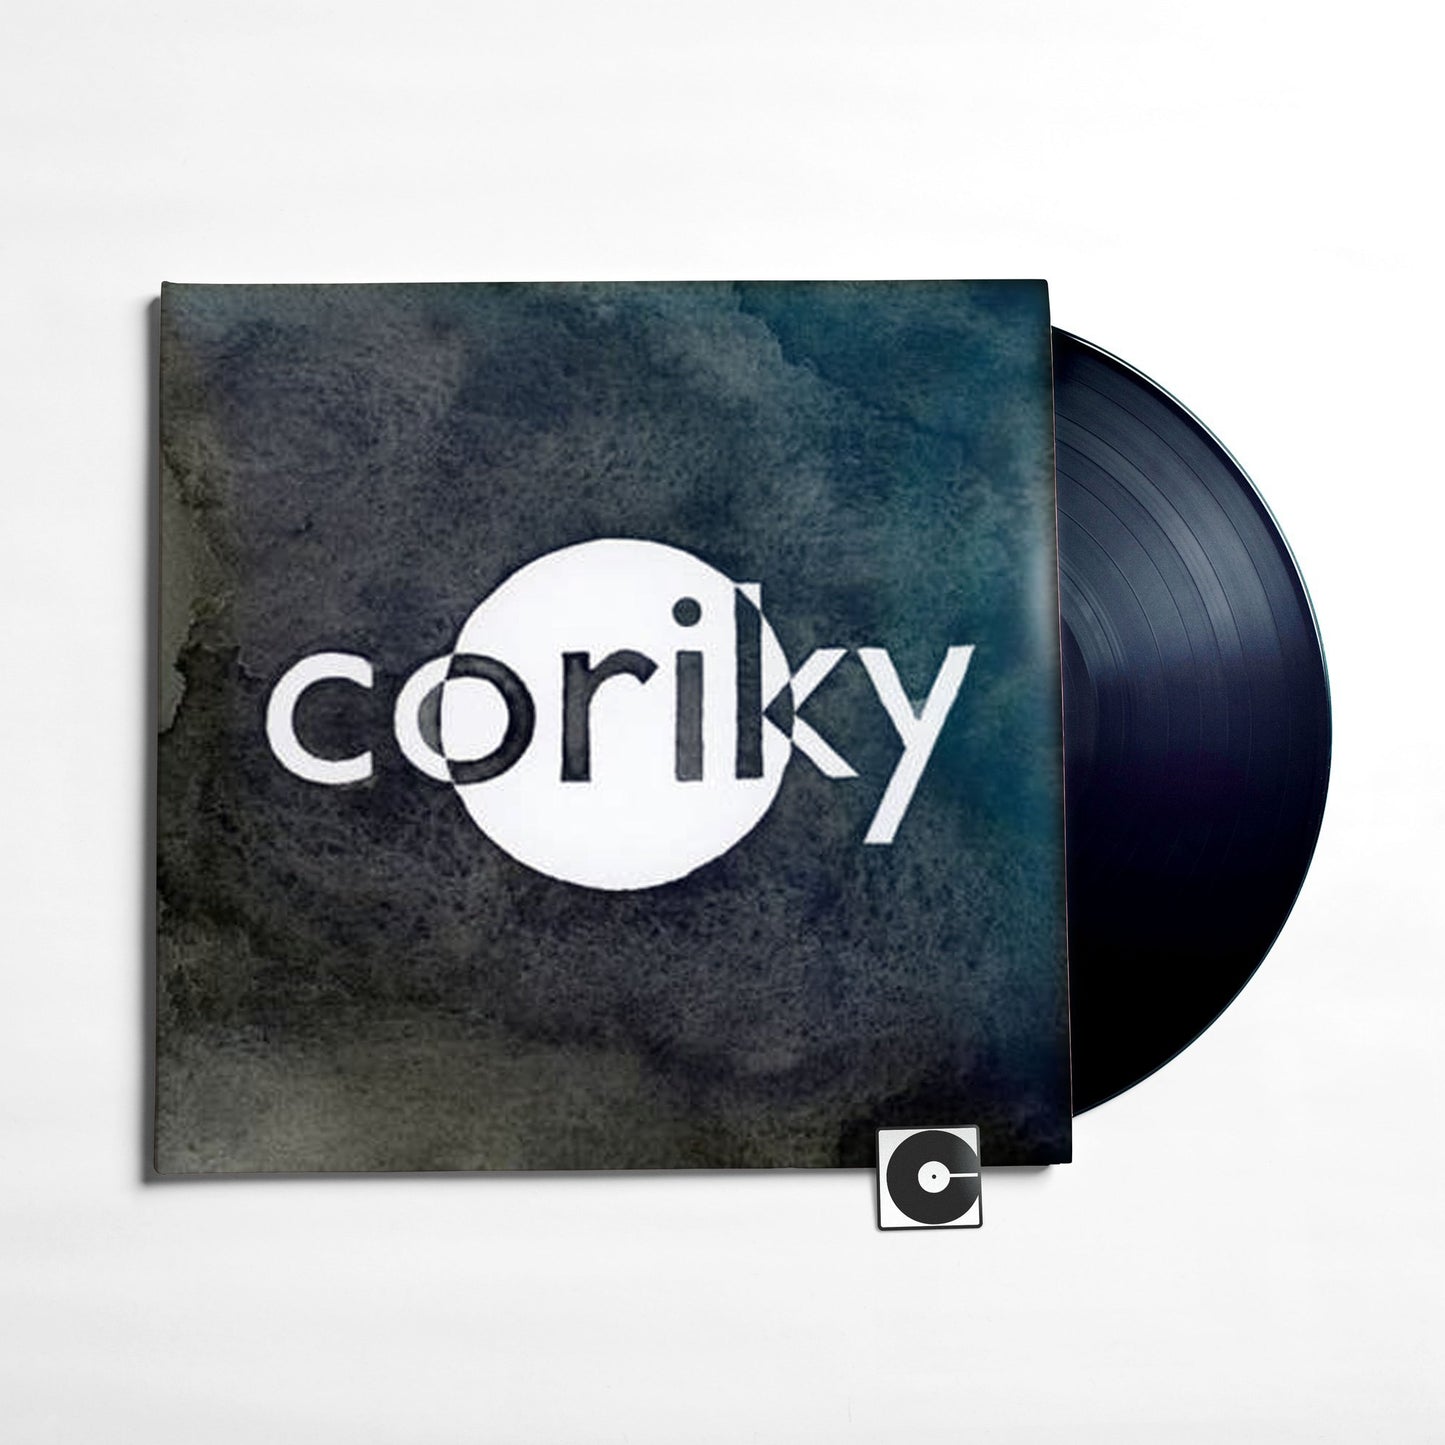 Coriky - "Coriky"